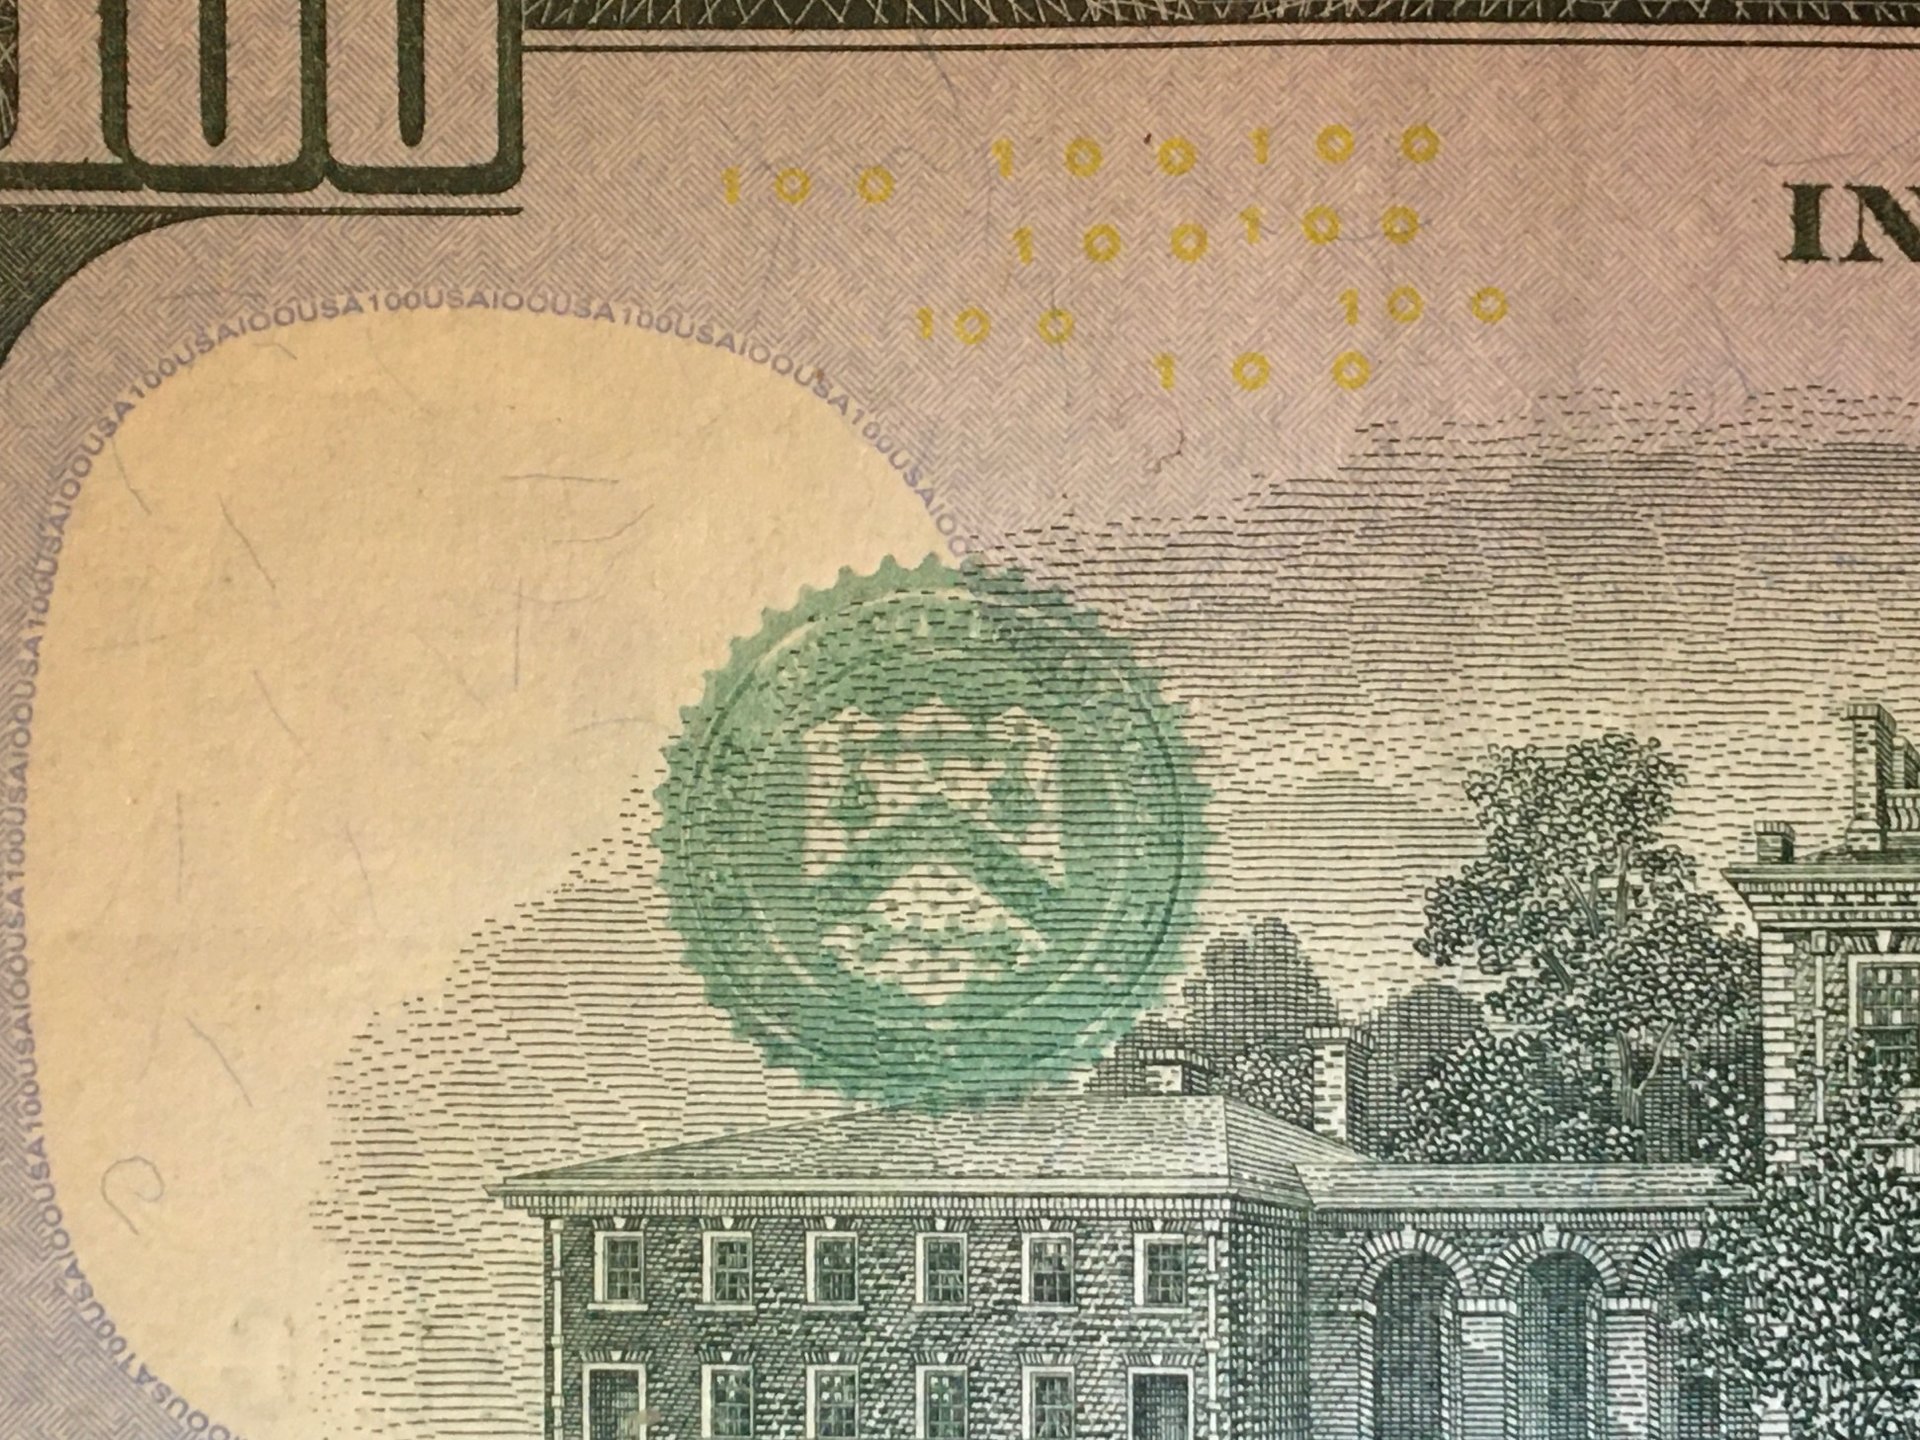 $100 Treasury Seal Ink Bleed.jpg